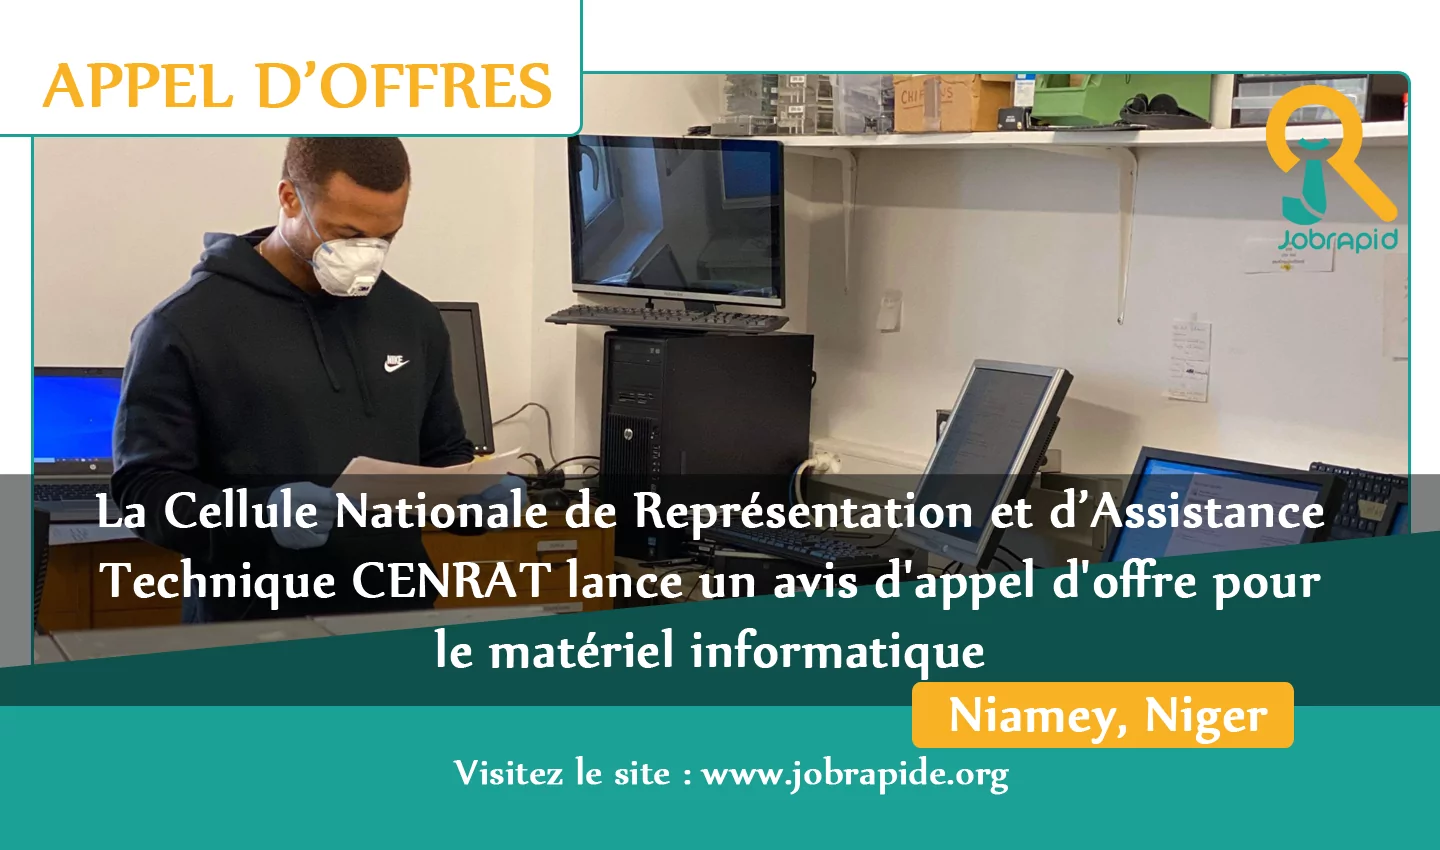 La Cellule Nationale de Représentation et d’Assistance Technique CENRAT lance un avis d’appel d’offre pour le matériel informatique, Niamey, Niger